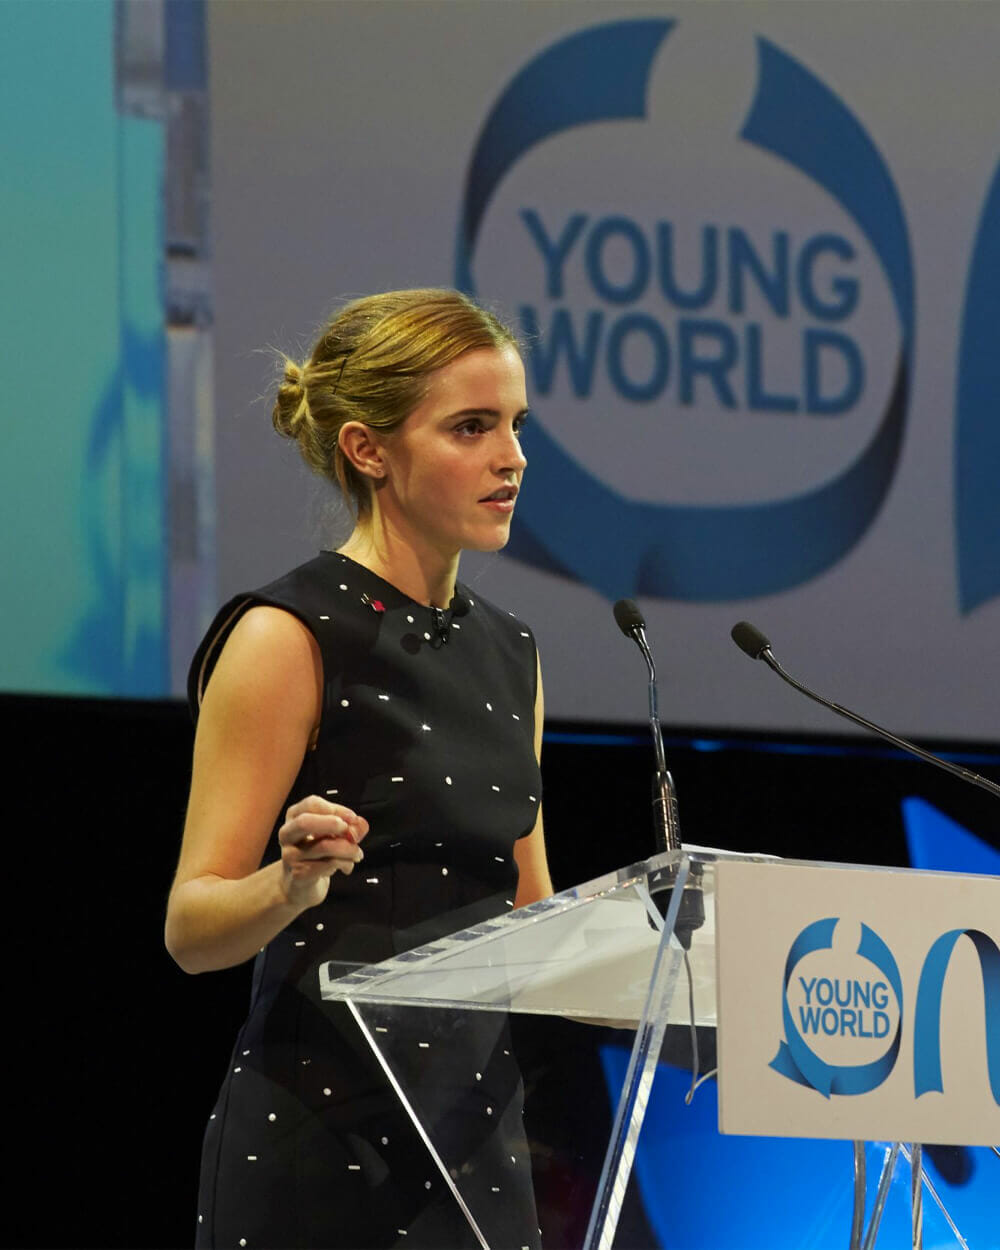 Emma Watson activism at Young World